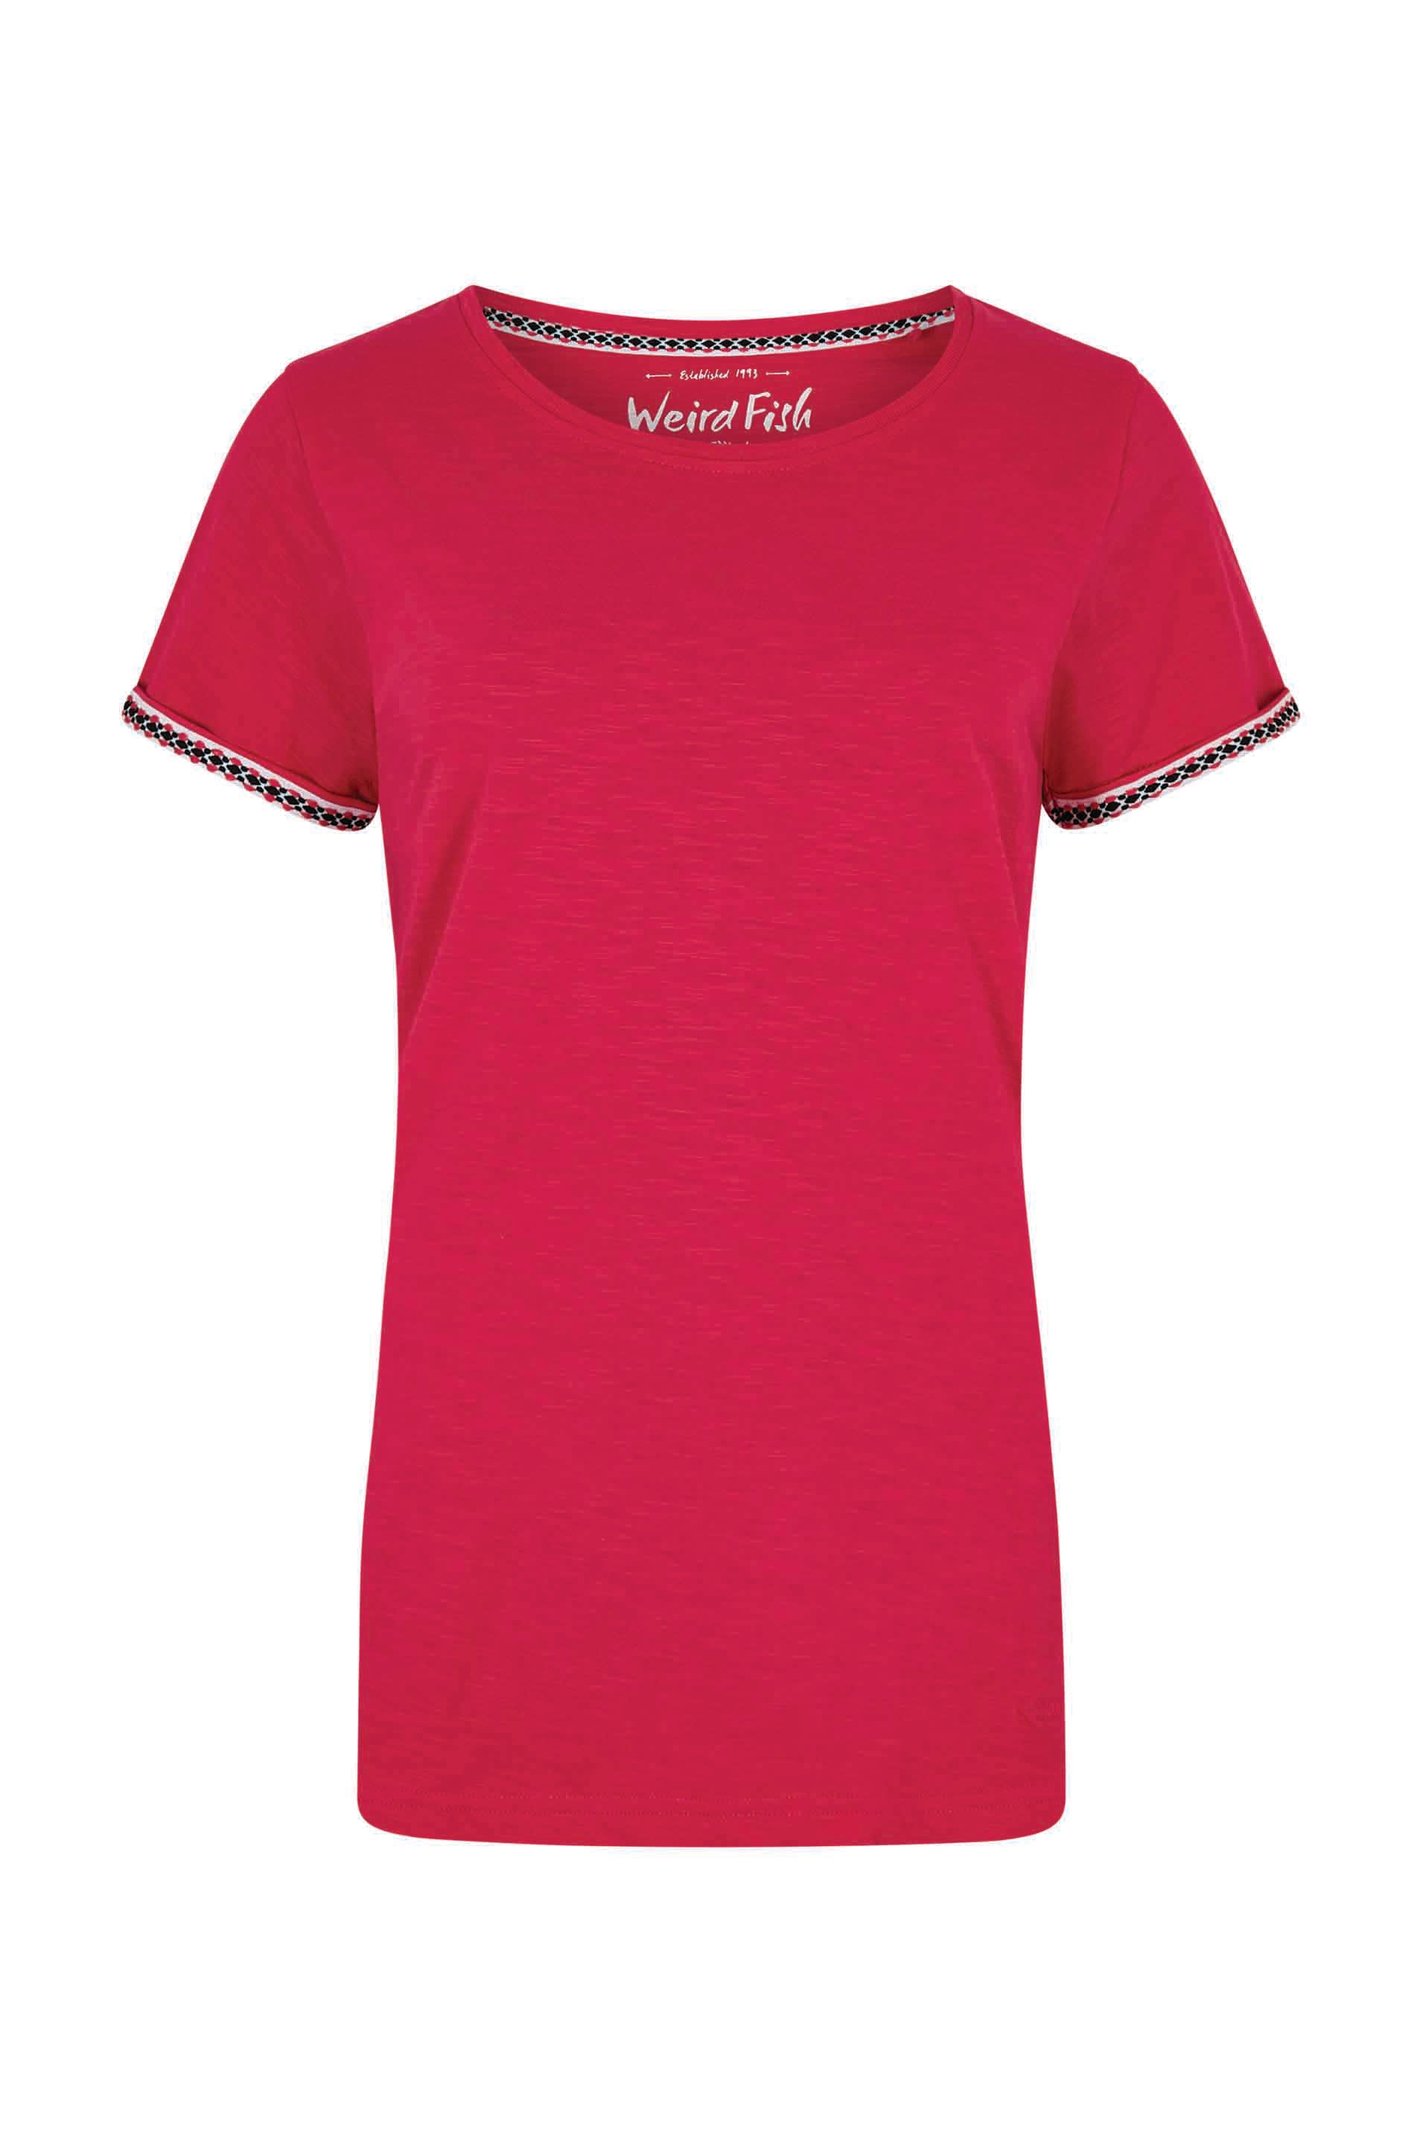 Weird Fish Teya Organic Cotton T-Shirt Hot Pink Size 22